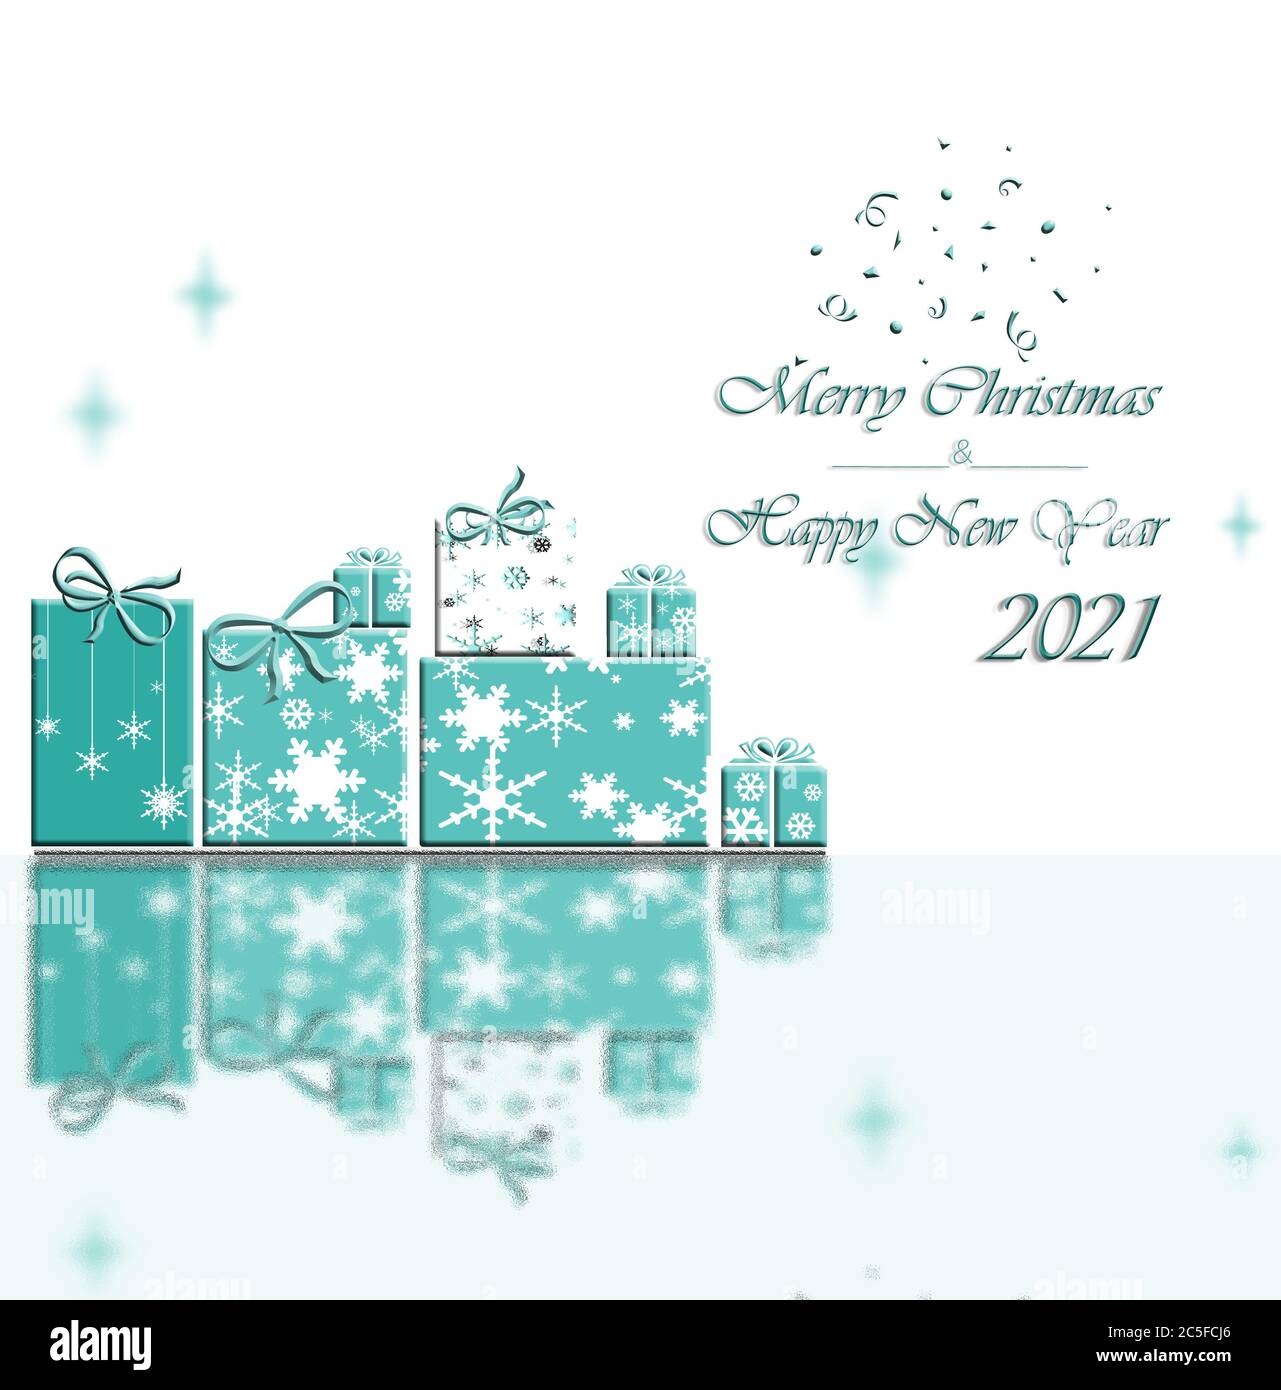 Décor de Noël élégant avec boîtes cadeaux en flocons de neige avec reflets. Texte bonne année 2021 et Joyeux Noël en bleu turquoise. Illustration 3D Banque D'Images